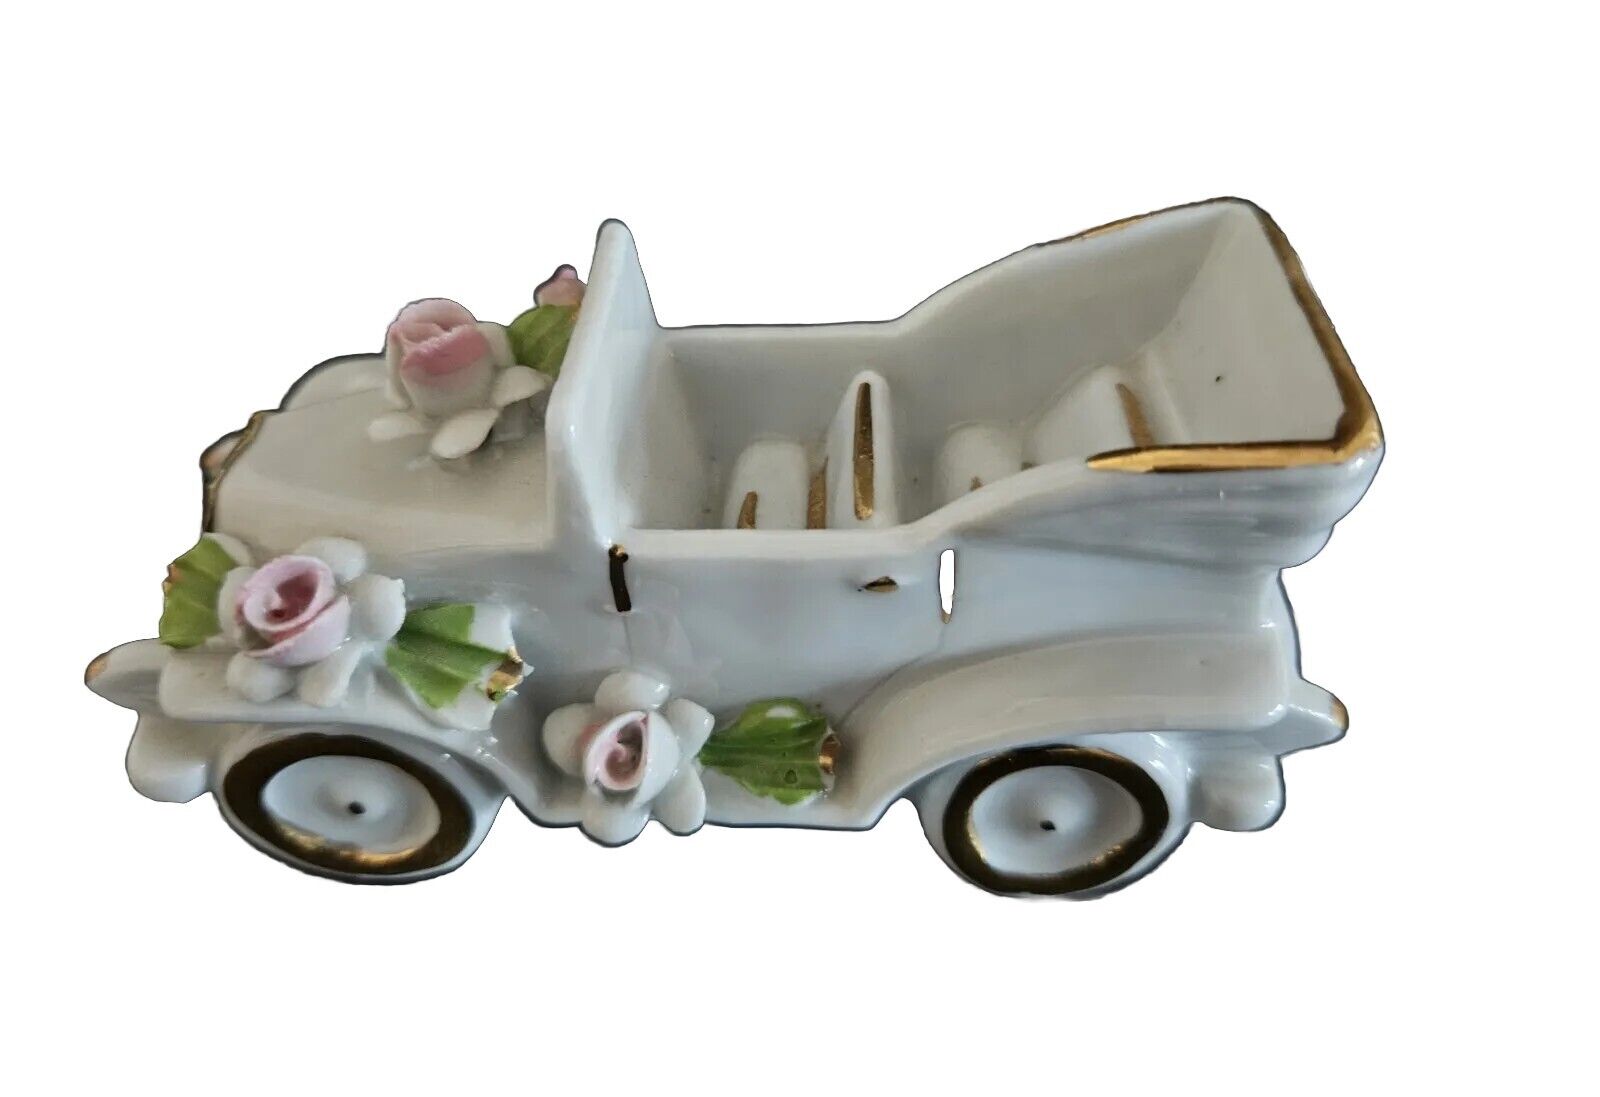 EUC Vintage Capodimonte Porcelain Car Figurine 4.5” L X 2” H X 1 ¾” D, “N” Italy